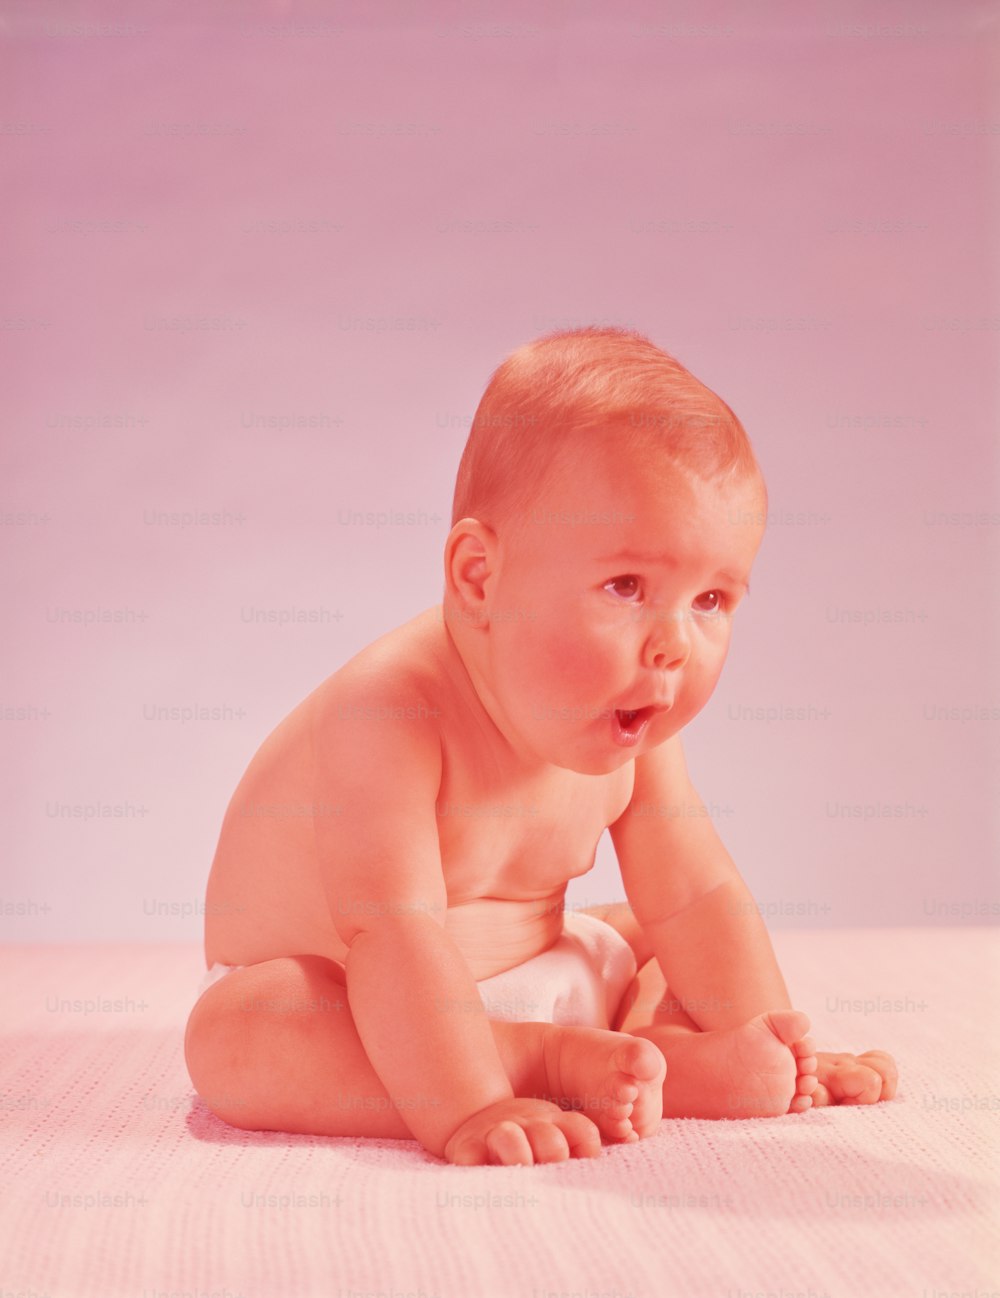 ÉTATS-UNIS - Vers les années 1950 : Bébé portant une couche, penché en avant.